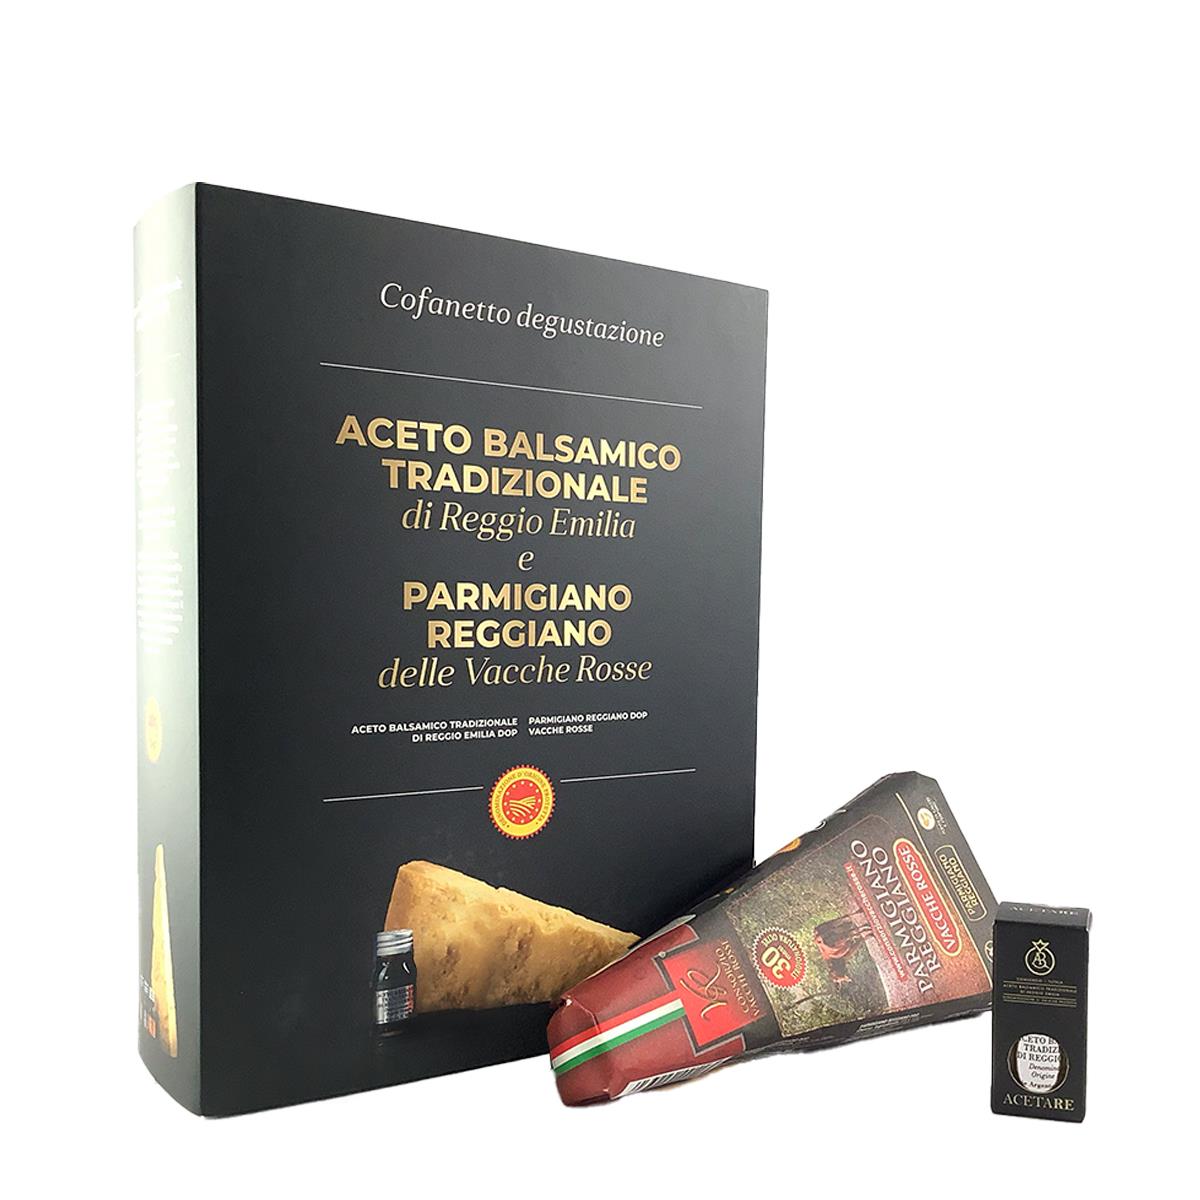 Schachtel Parmigiano Reggiano Vacche Rosse 30 Monate und Reggio Emilia Balsamico-Essig in Silberqua